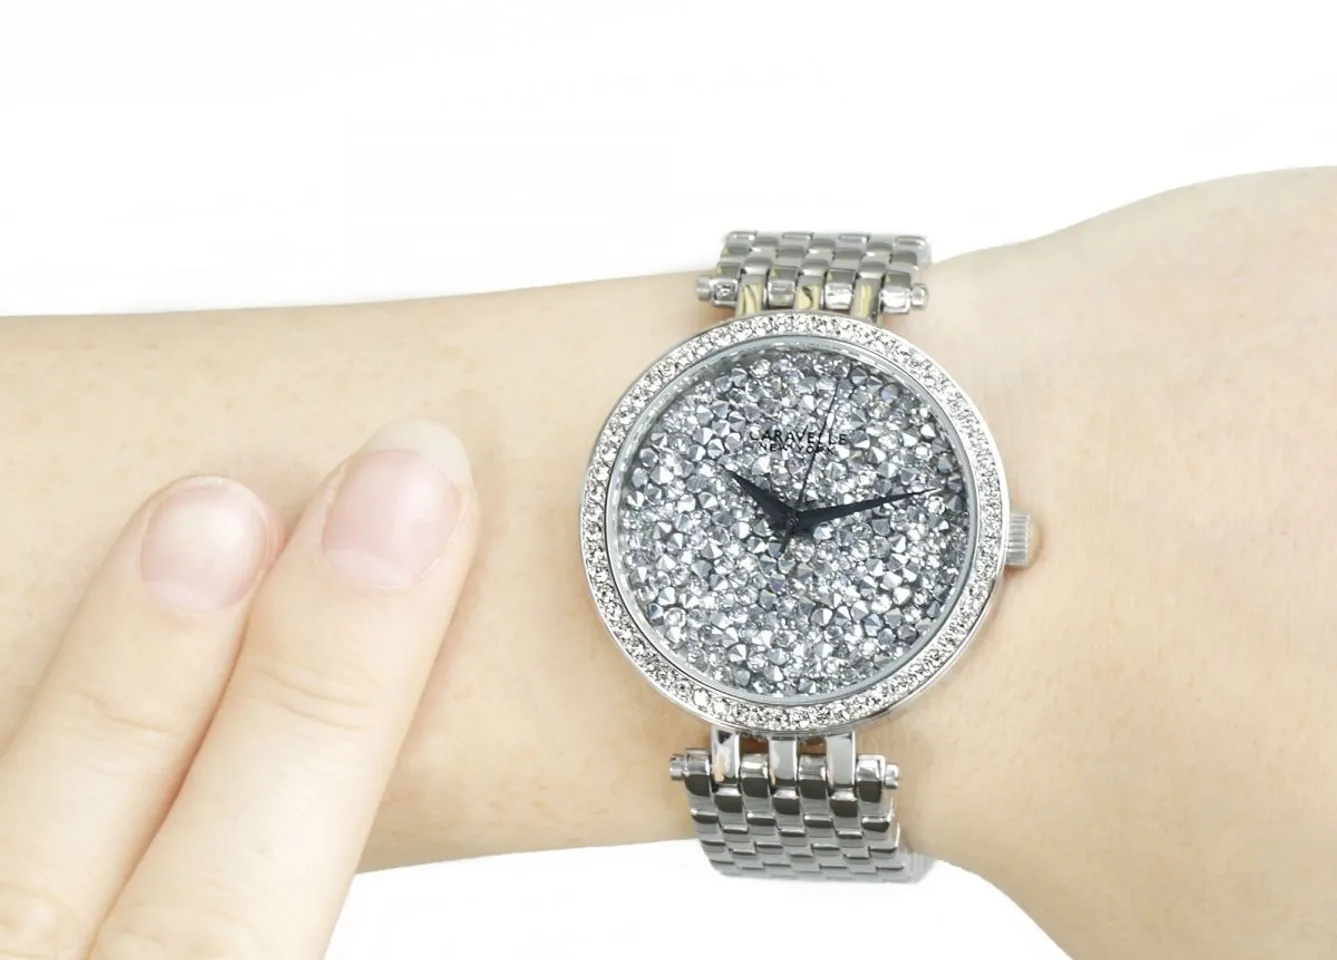 Chiếc đồng hồ Caravelle New York nữ trên tay mang sức hút khó cưỡng